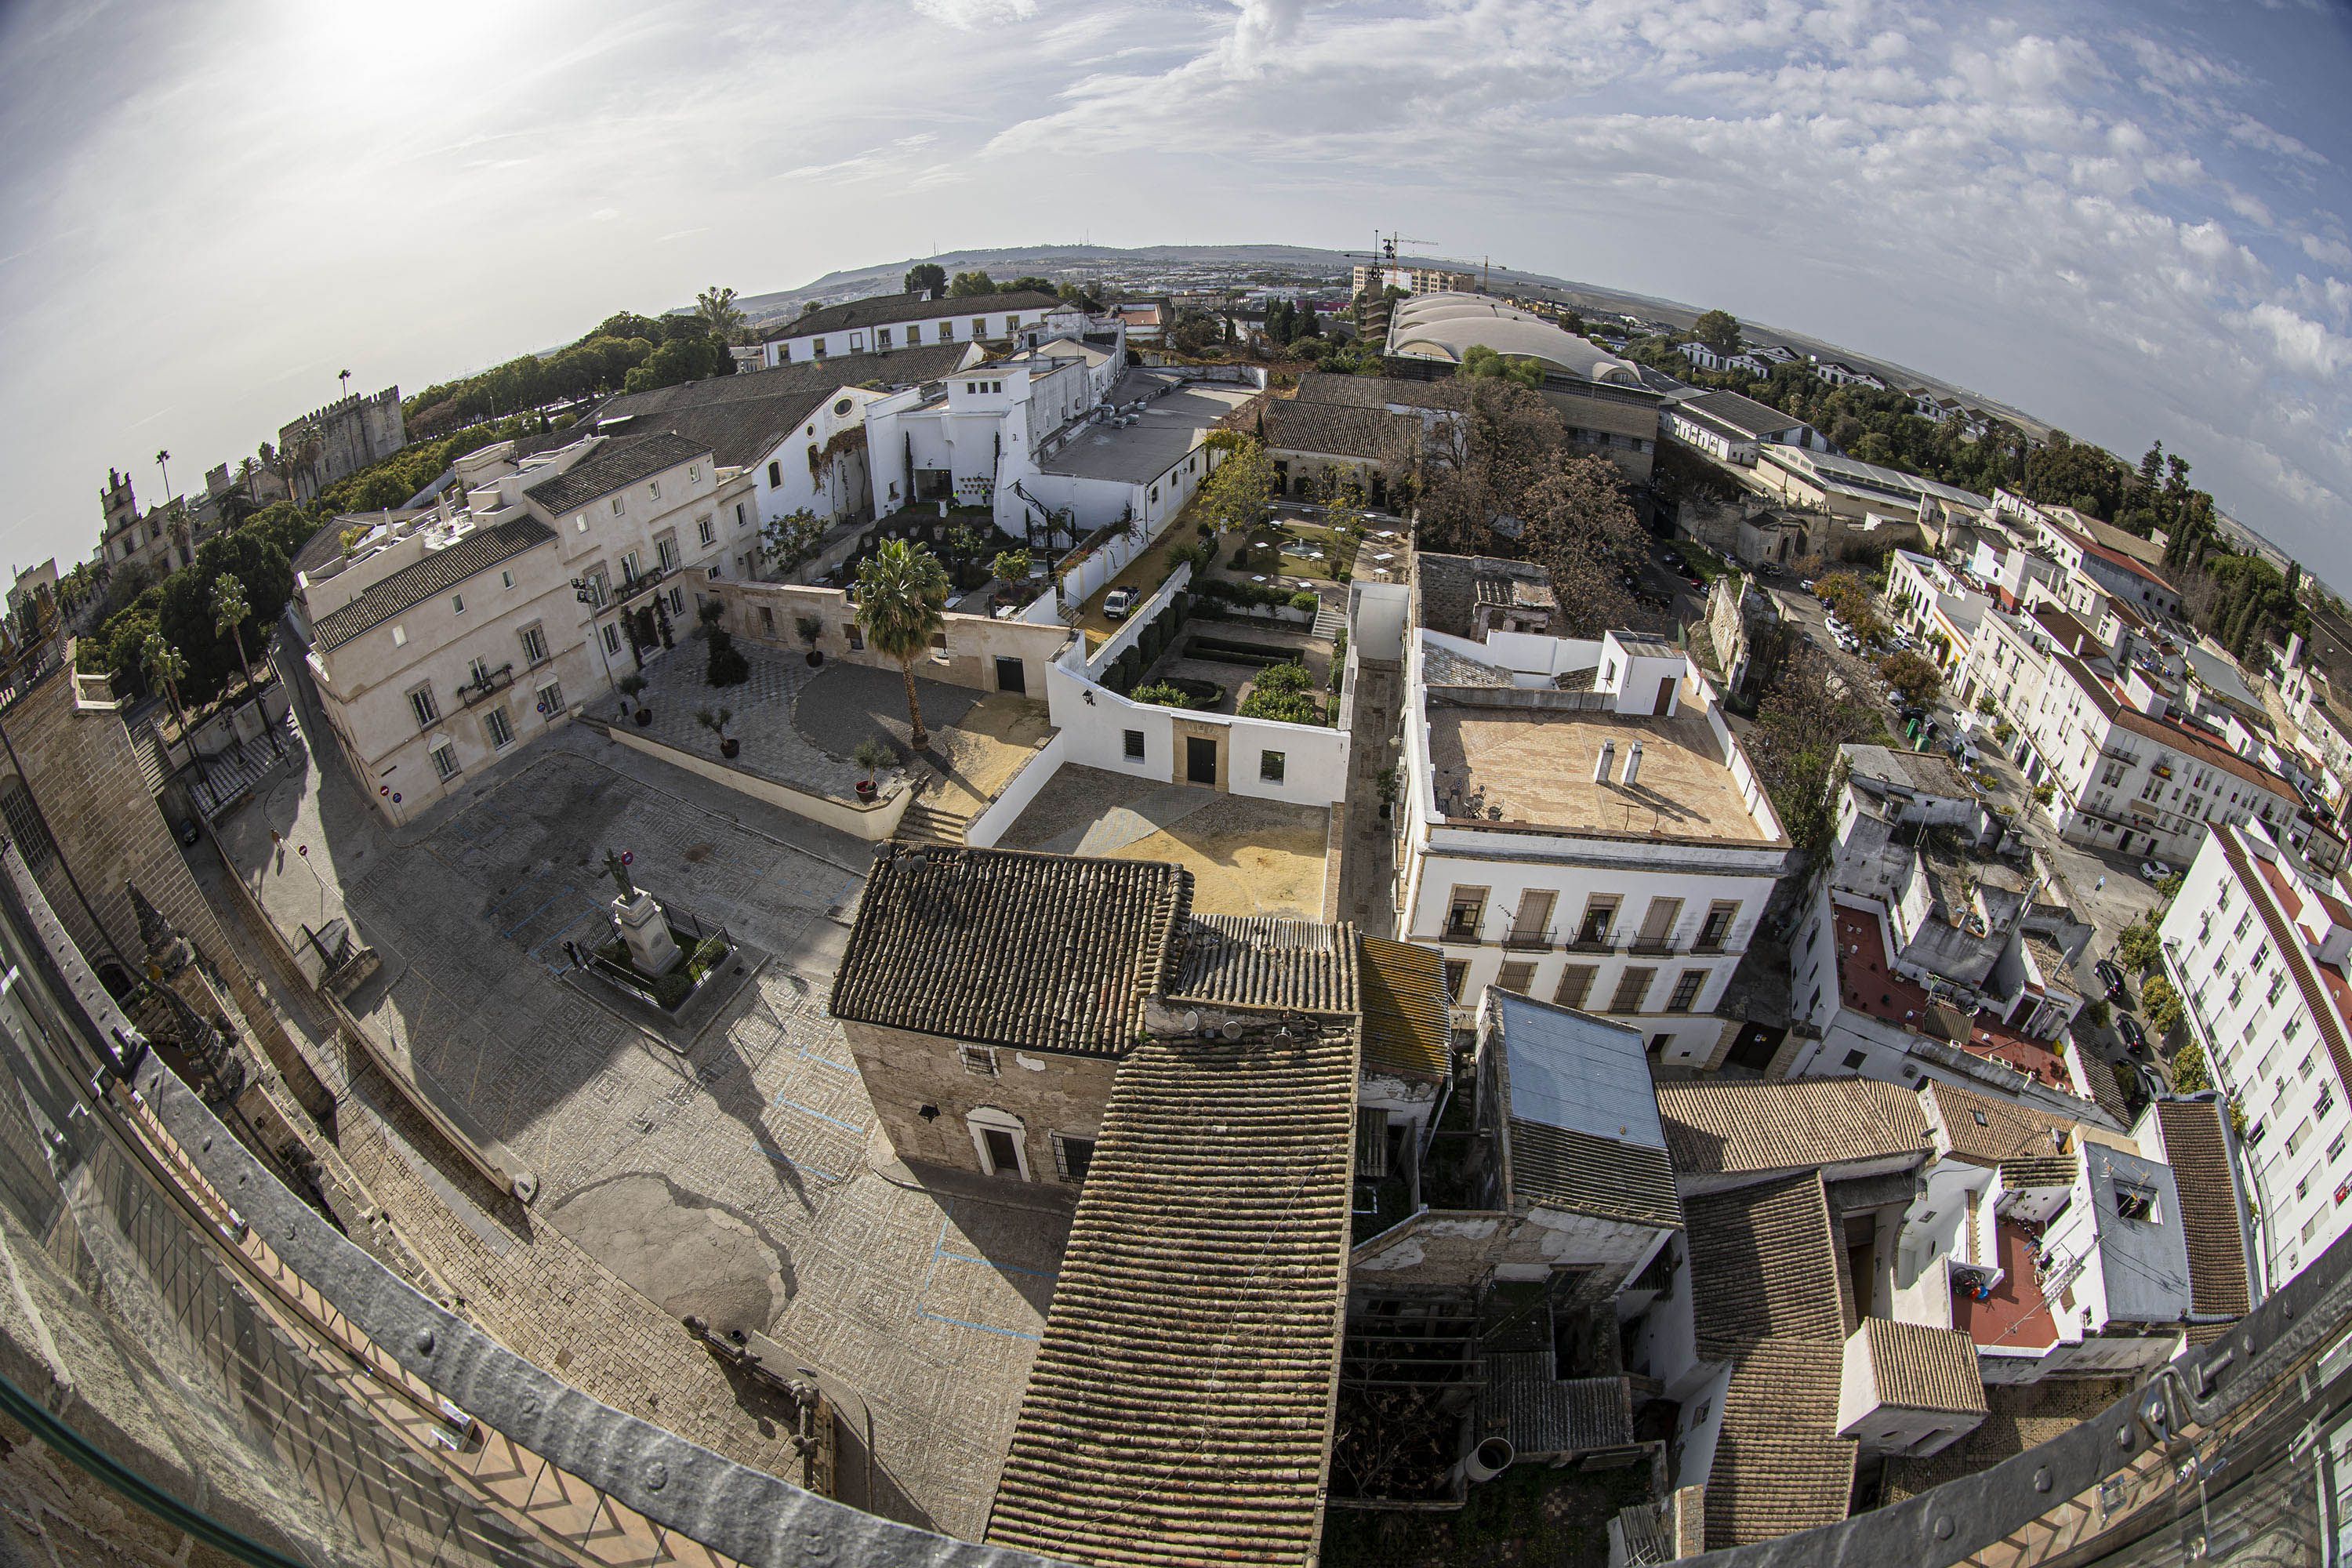 La Plaza de la Encarnación y el conjunto hotelero y bodeguero de González Byass. También se aprecia arriba a la izquierda el Alcázar de Jerez.